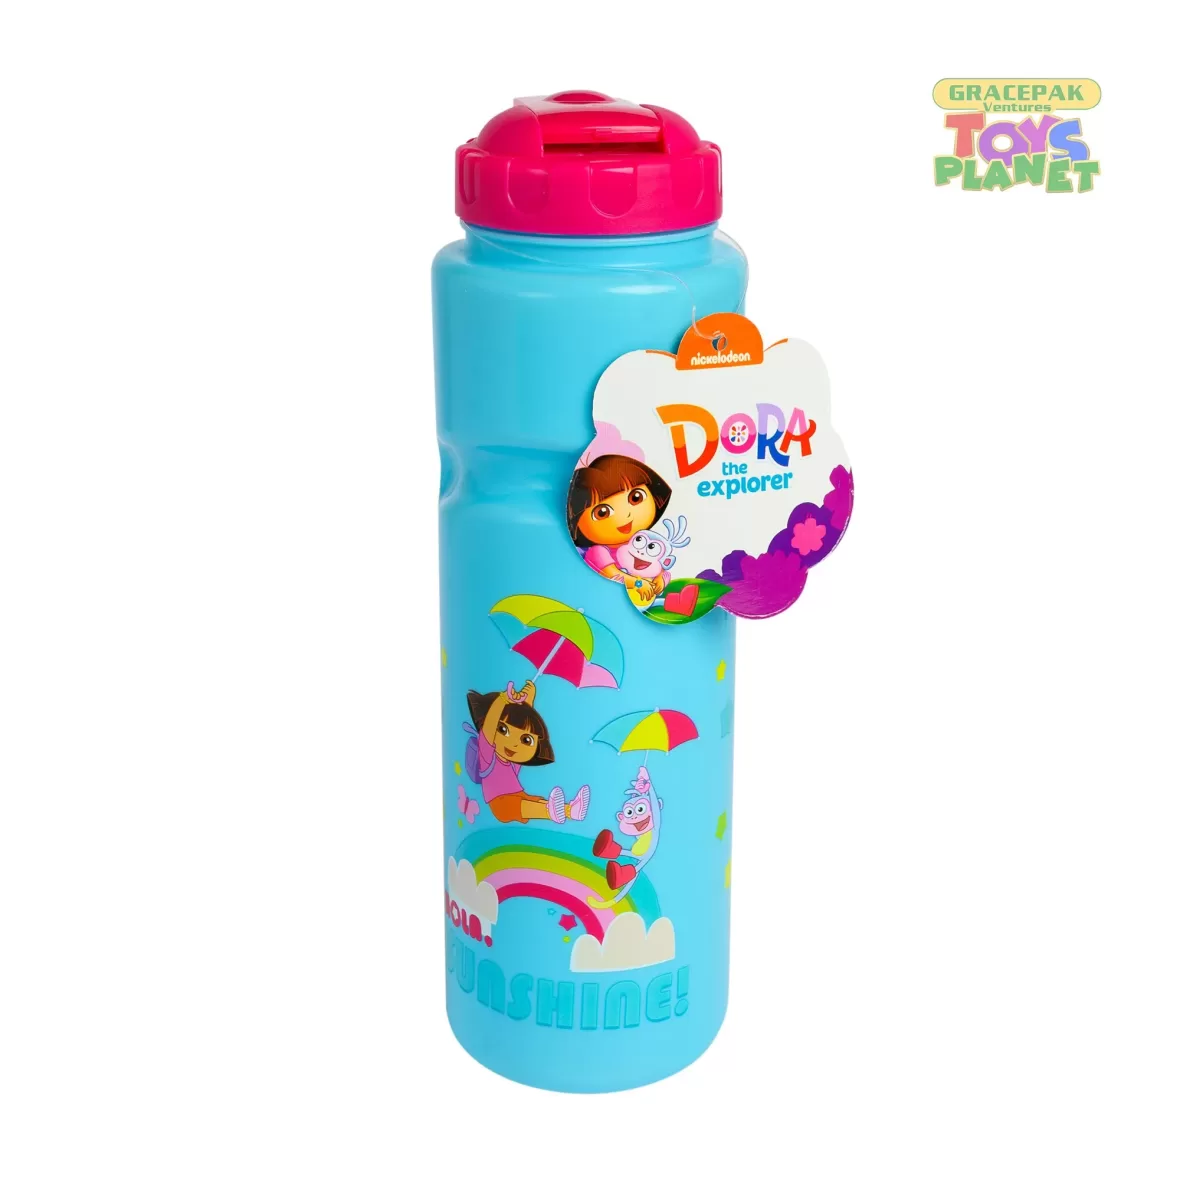 Dora the Explorer Water Bottles